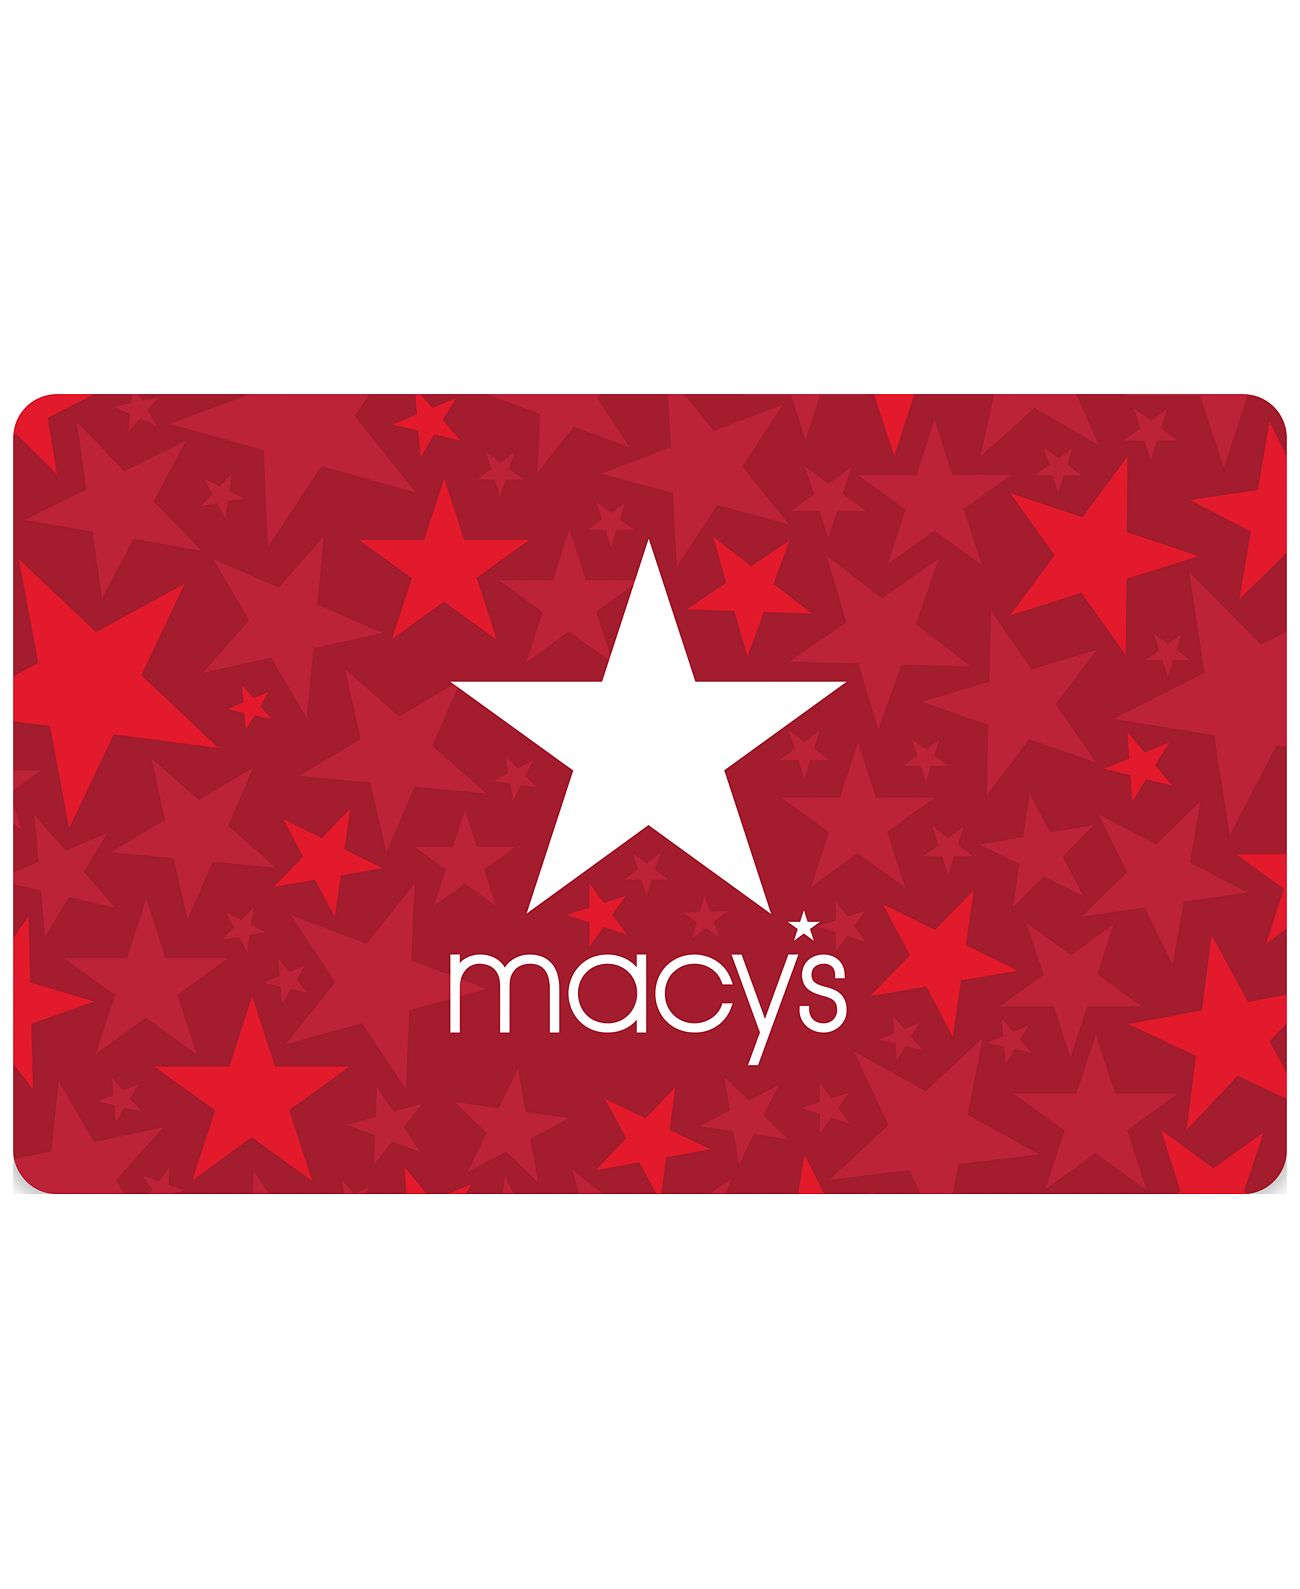 Интернет-магазин Usmall.ru: в продаже Подарочная карта Macys Macys Gift Car...